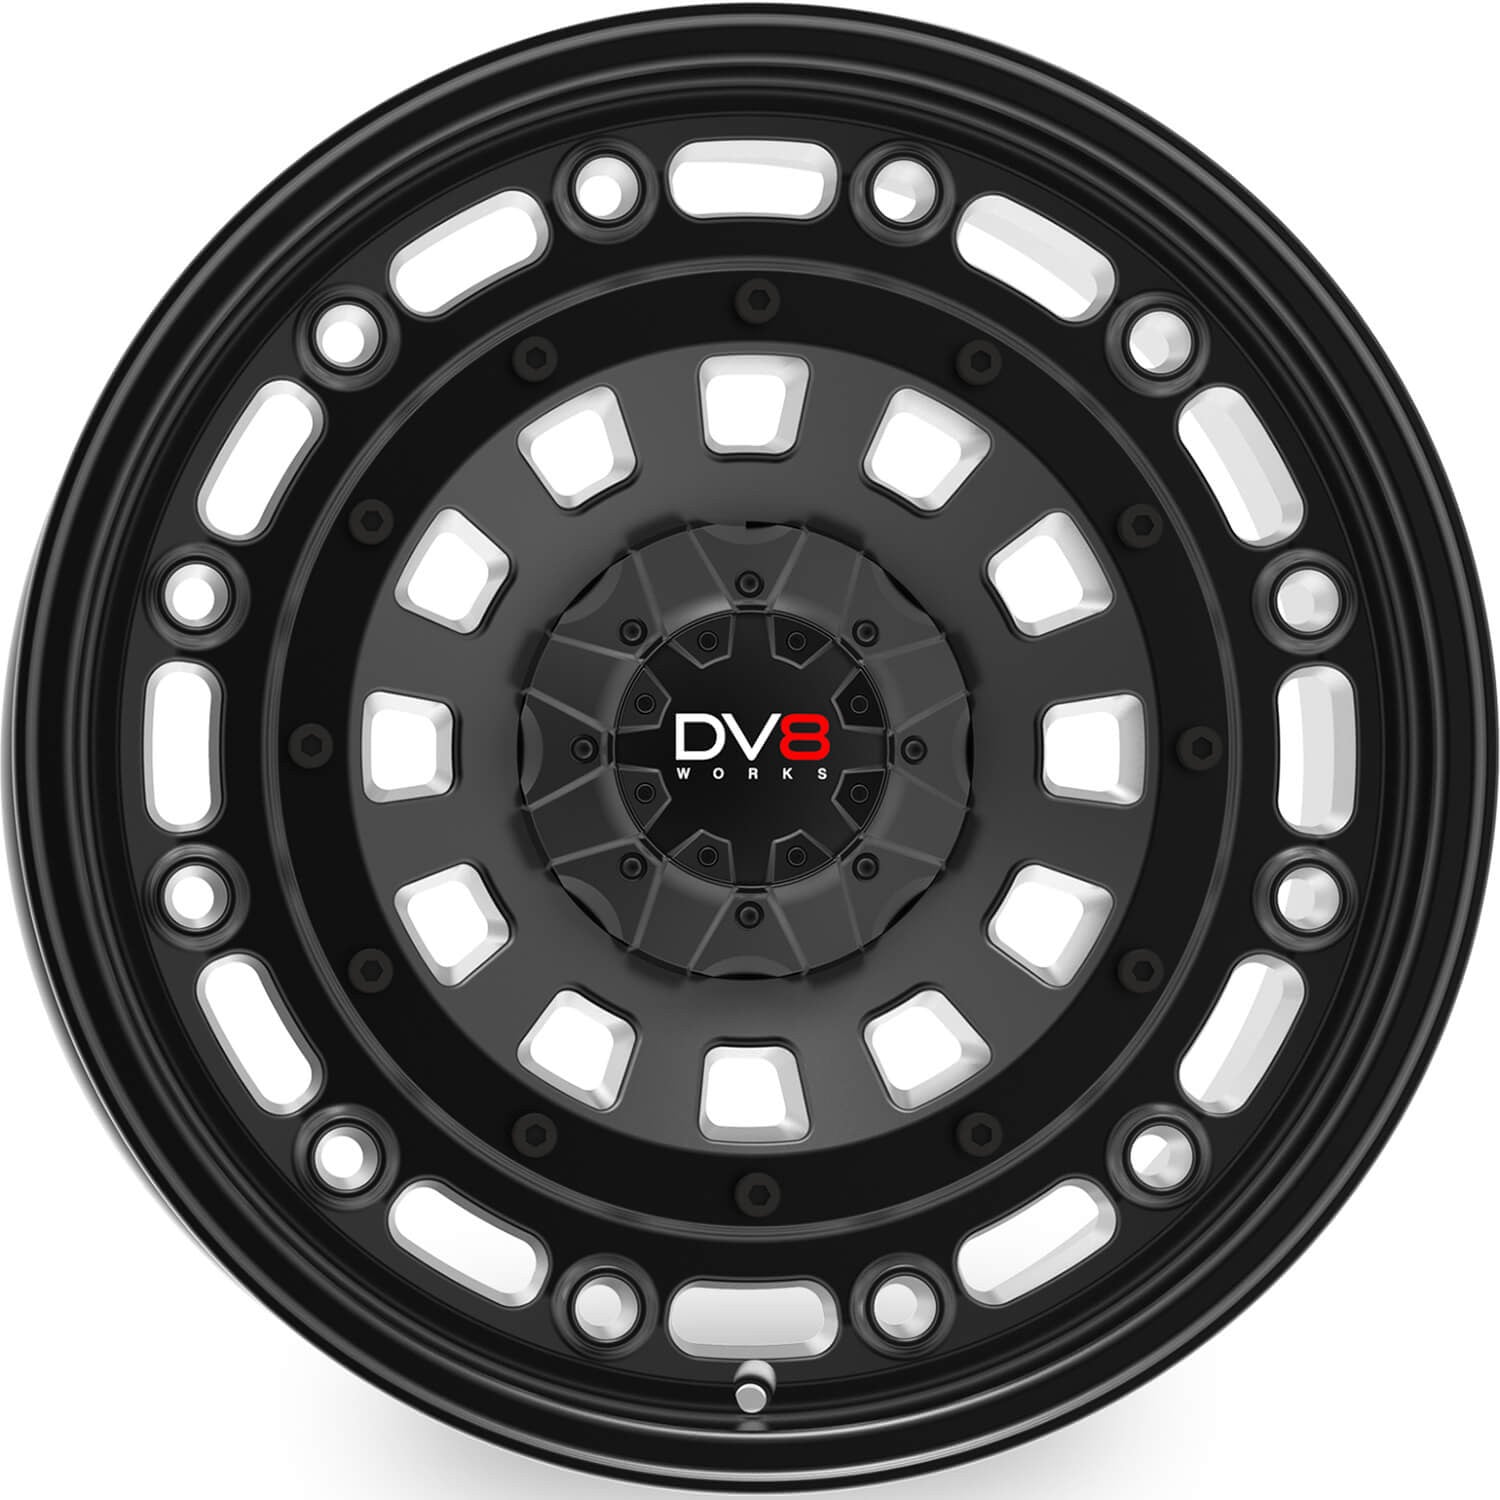 DV8 Works Twisted Black 20" Alloy Wheel - Next-Gen Ranger UK